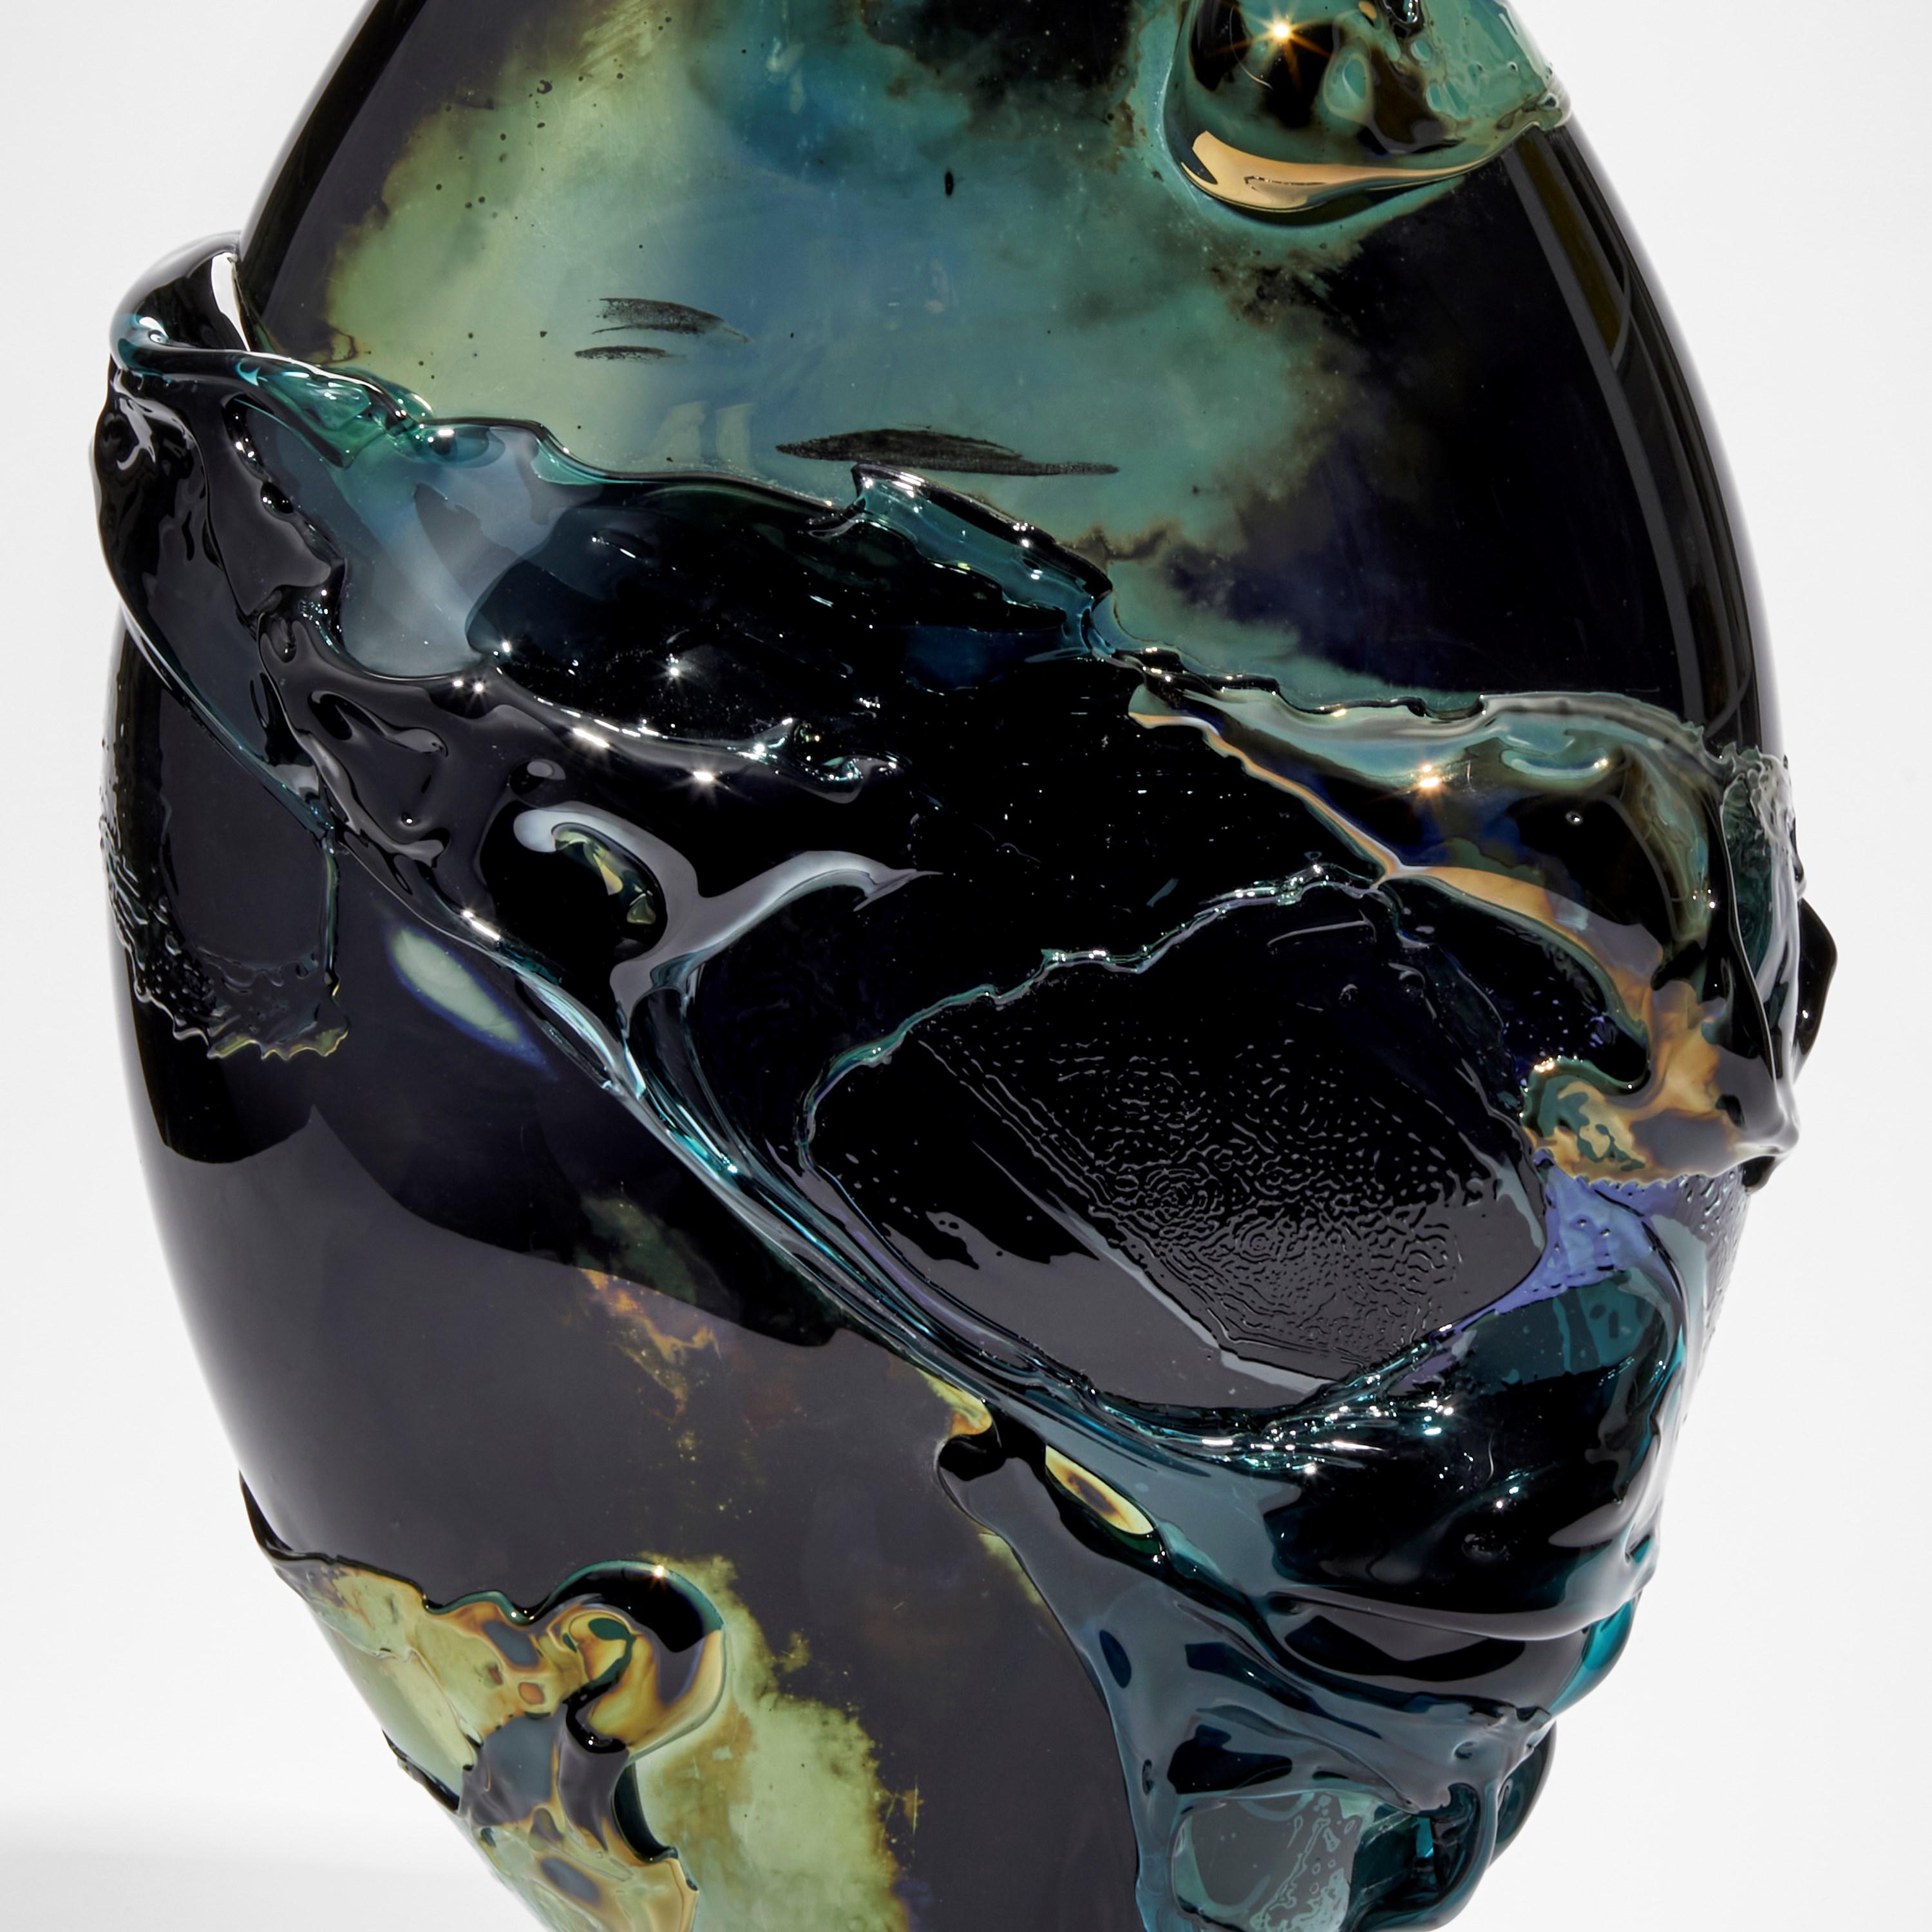 British Black Sea II, Unique Black, Green & Aqua Sculptural Glass Vessel by Bethany Wood